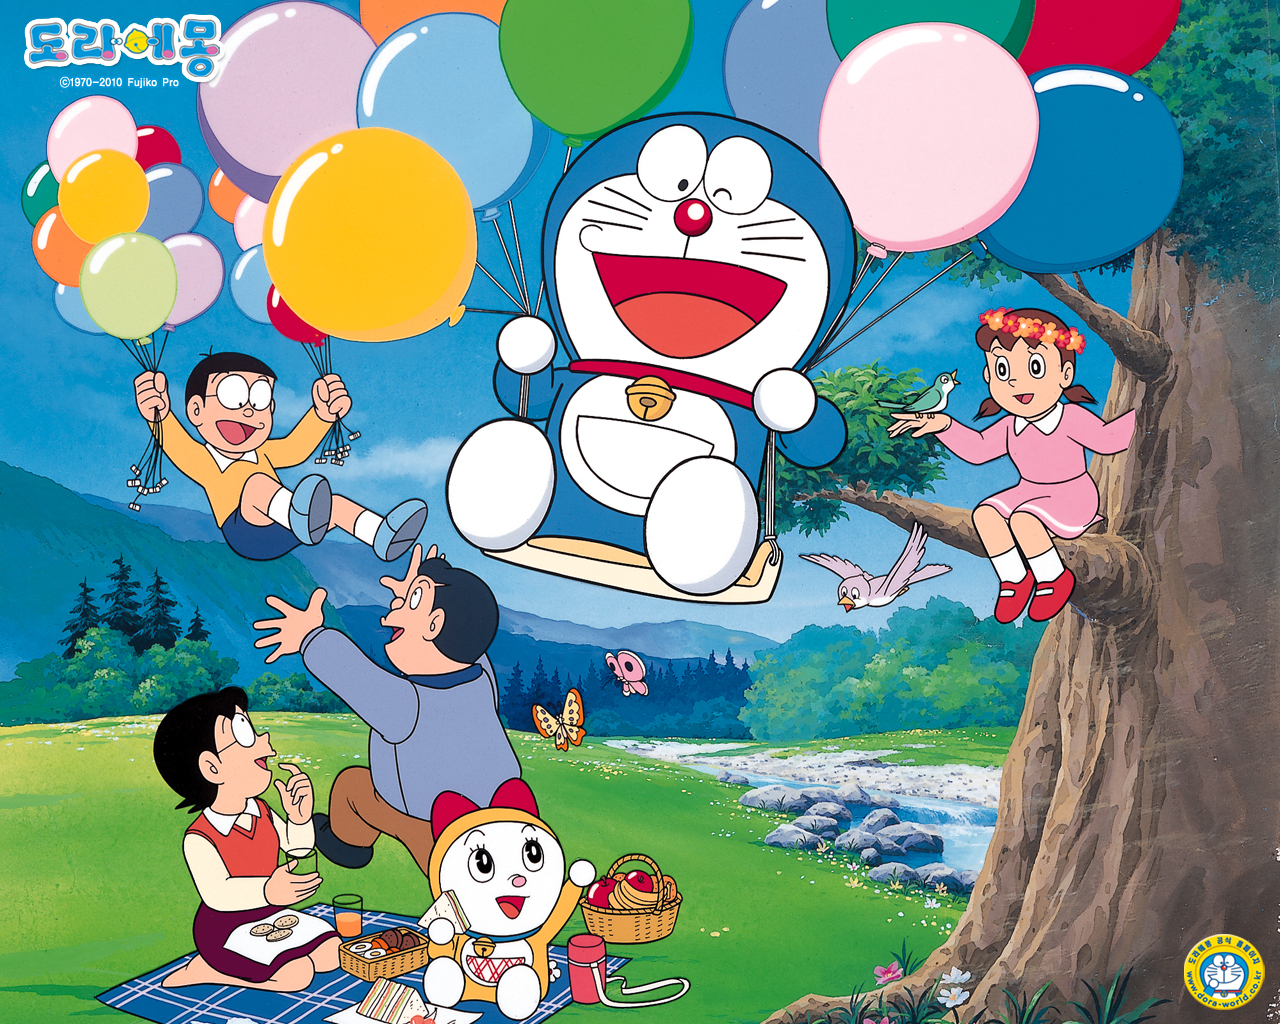 Doraemon Computer Wallpapers, Desktop Backgrounds - Tema Doraemon Windows  10 - 1280x1024 Wallpaper 